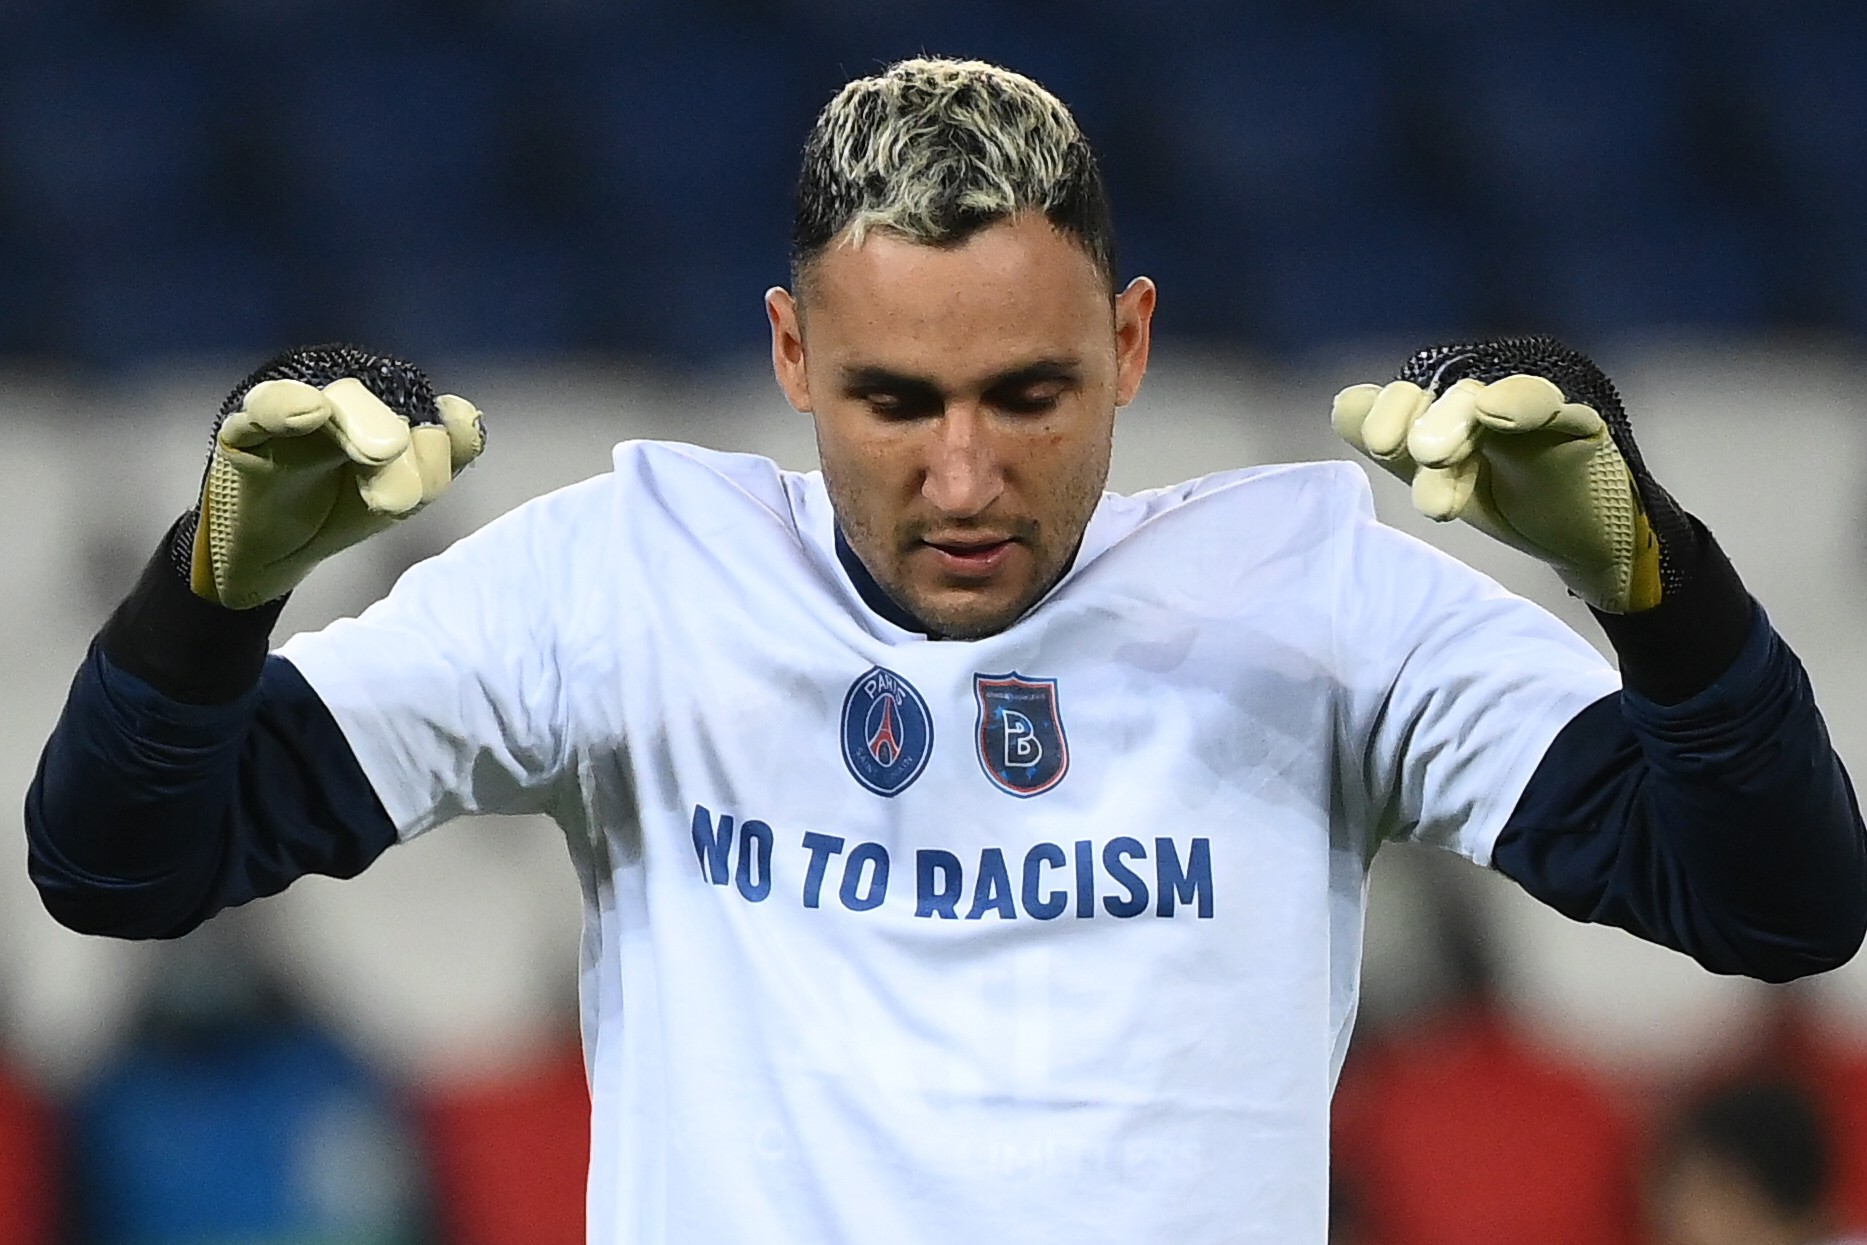 “No al racismo”, el poderoso mensaje enviado por árbitros y jugadores del PSG-Basaksehir antes de reanudar juego